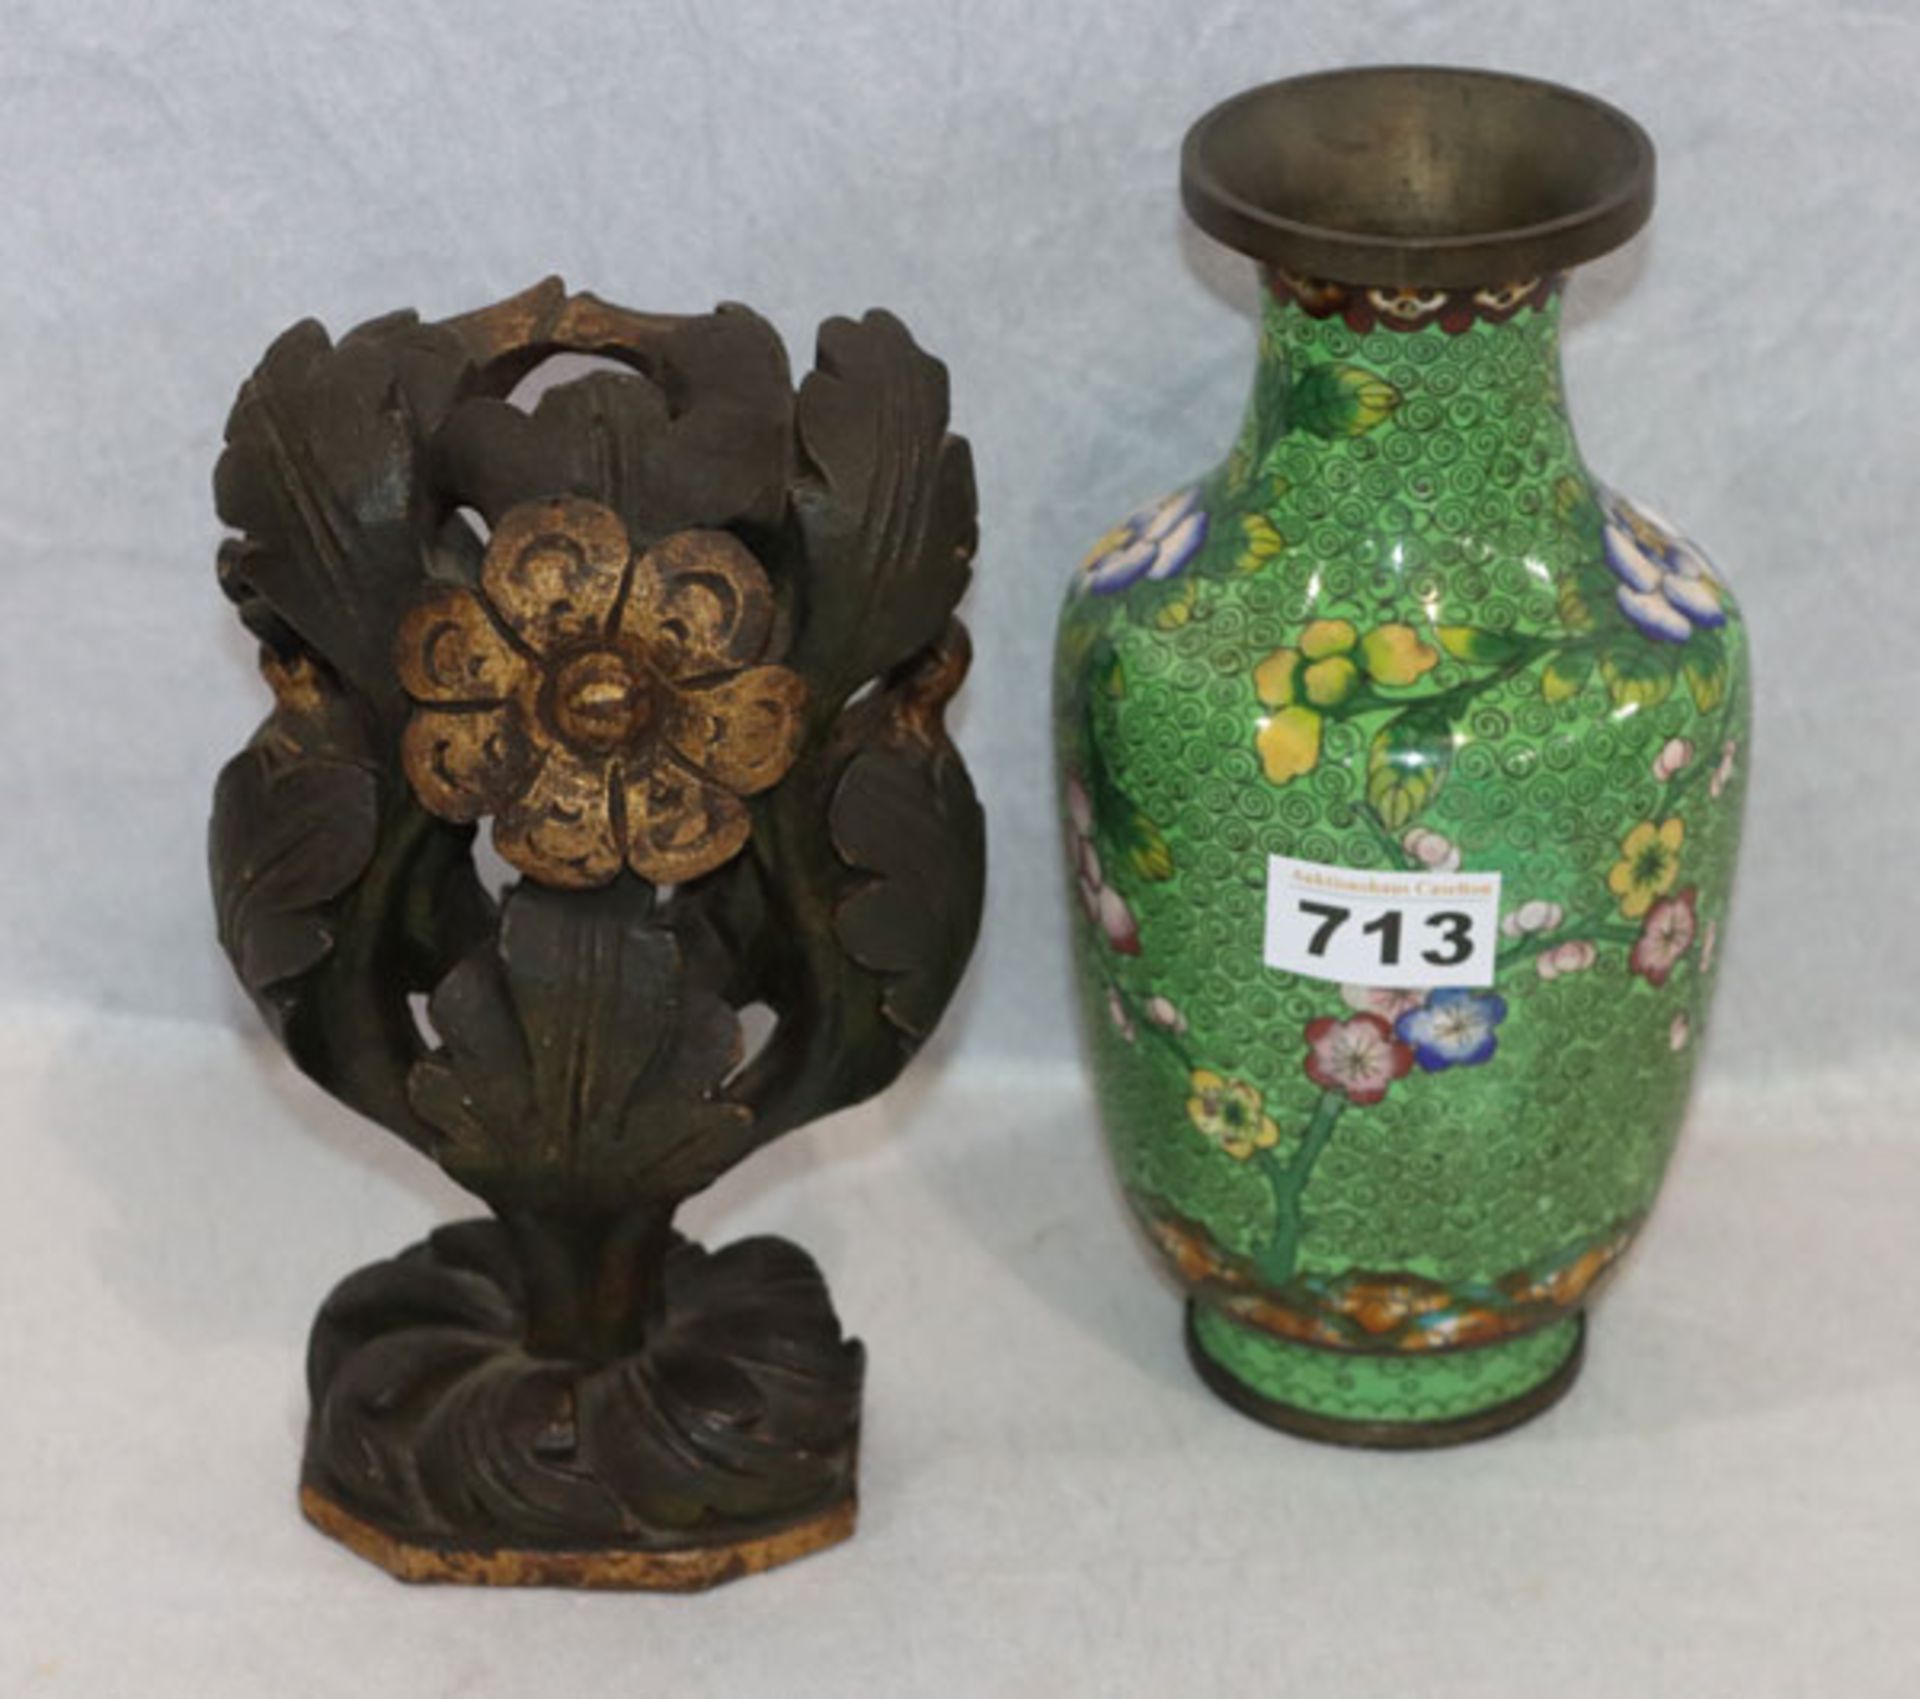 Cloisonné Vase, grün mit buntem Blumendekor, H 23,5 cm, und Skulptur 'Baum mit Vögel', braun/gold